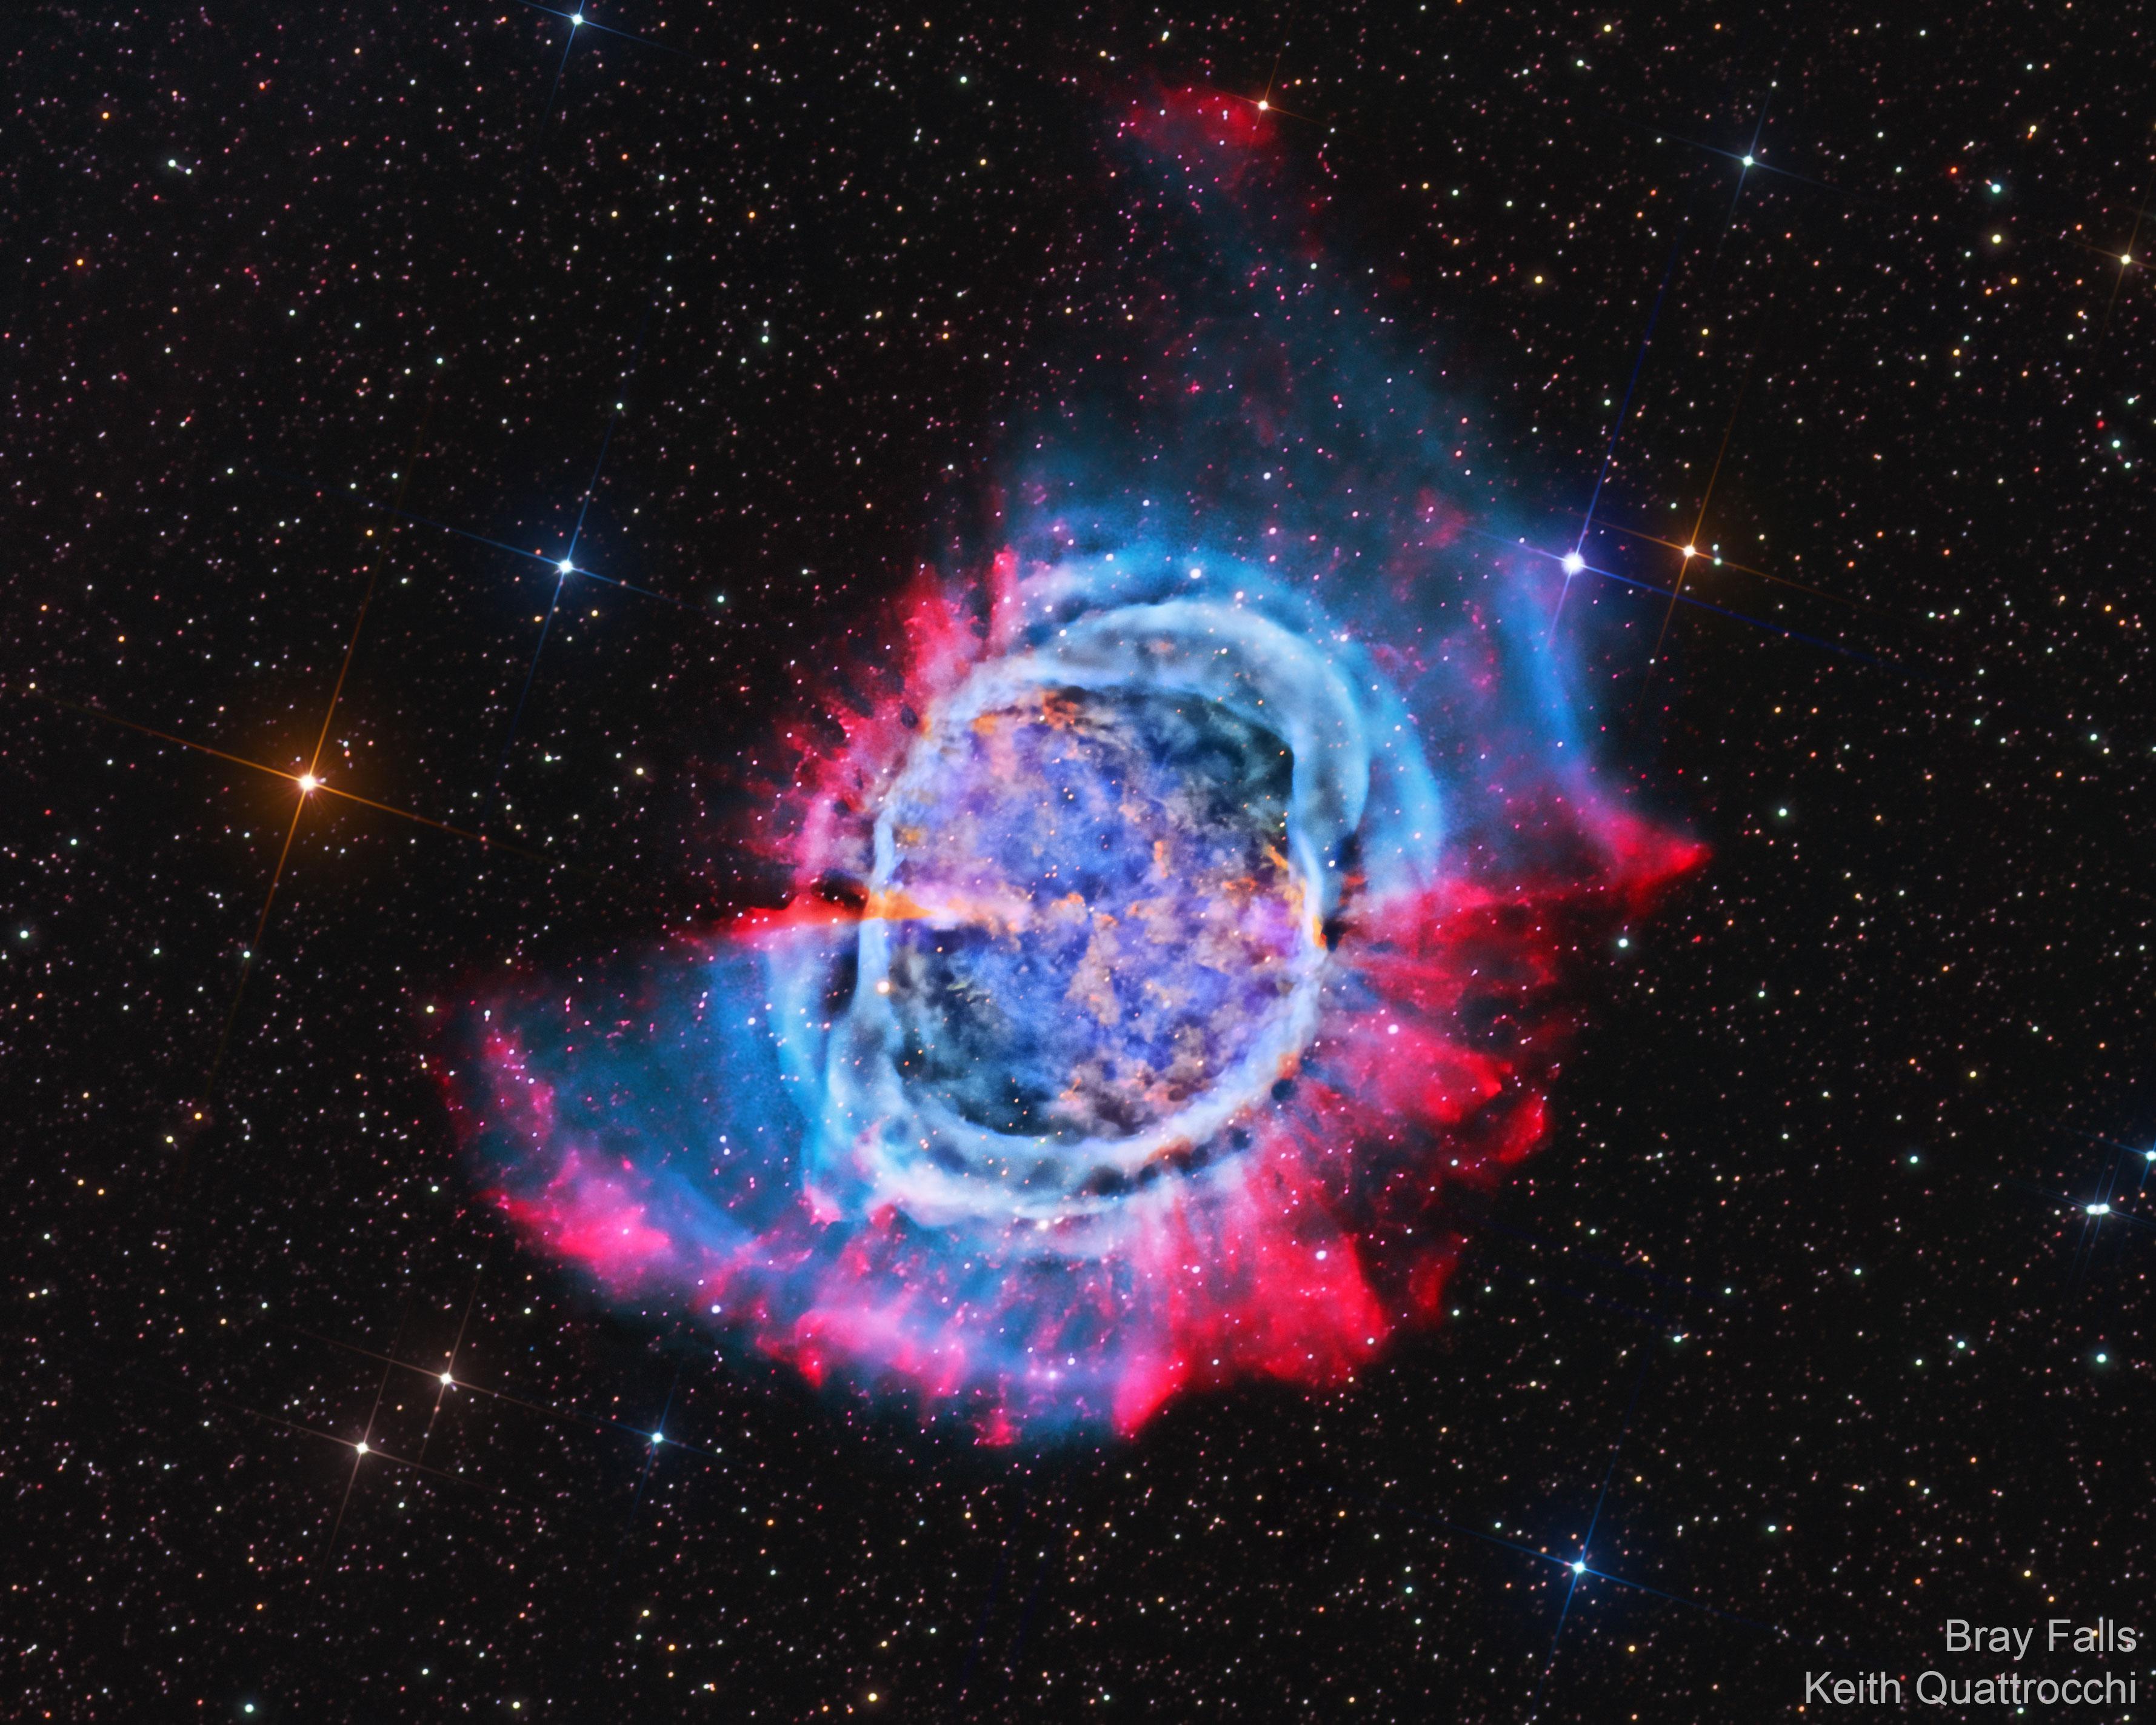 صورة لسديم كوكبي في الفضاء العميق، وحوله دائرة غازية باللونين الأحمر والأزرق وتظهر حوله النجوم.